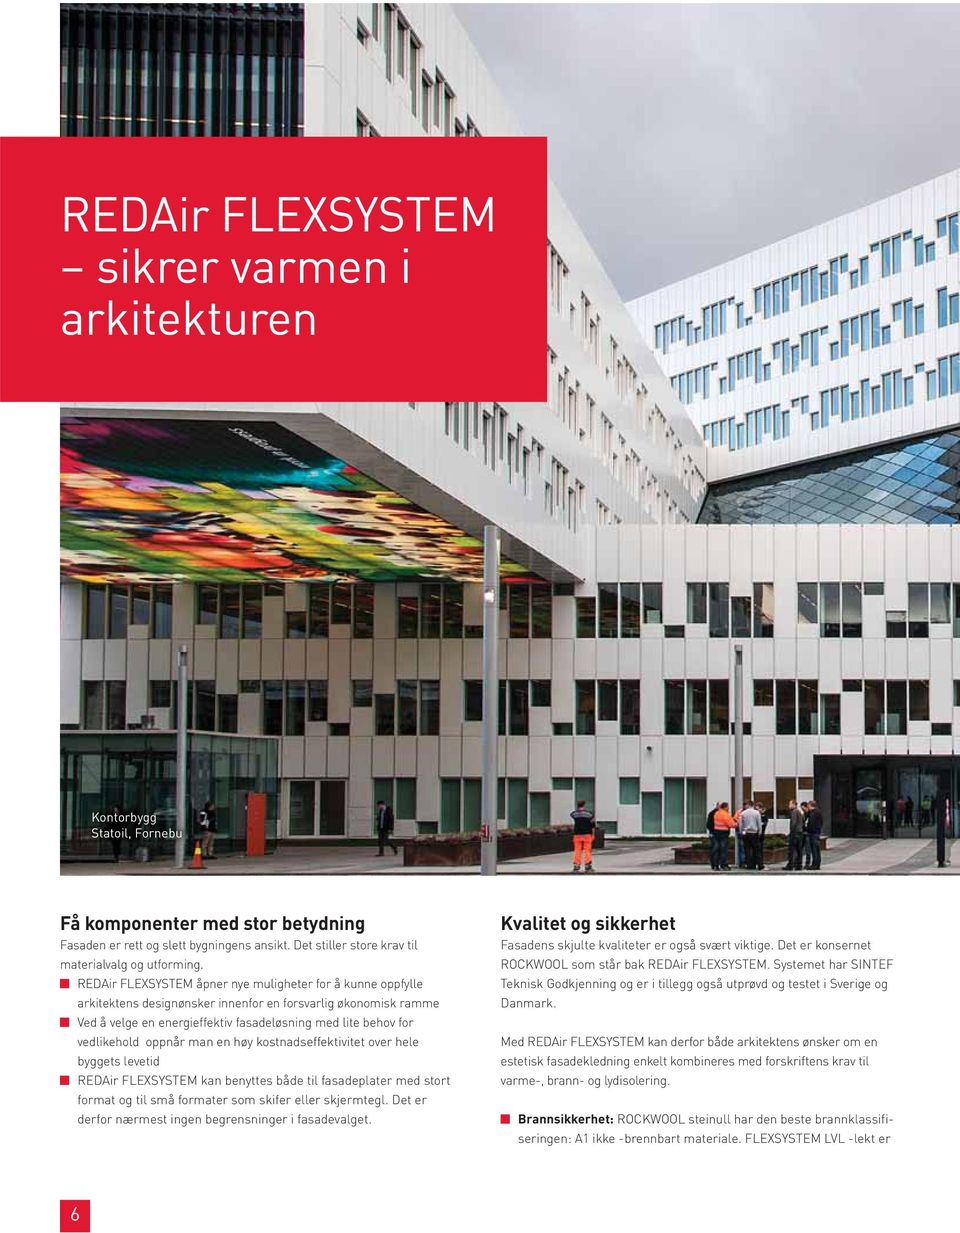 REDAir FLEXSYSTEM åpner nye muligheter for å kunne oppfylle arkitektens designønsker innenfor en forsvarlig økonomisk ramme Ved å velge en energieffektiv fasadeløsning med lite behov for vedlikehold